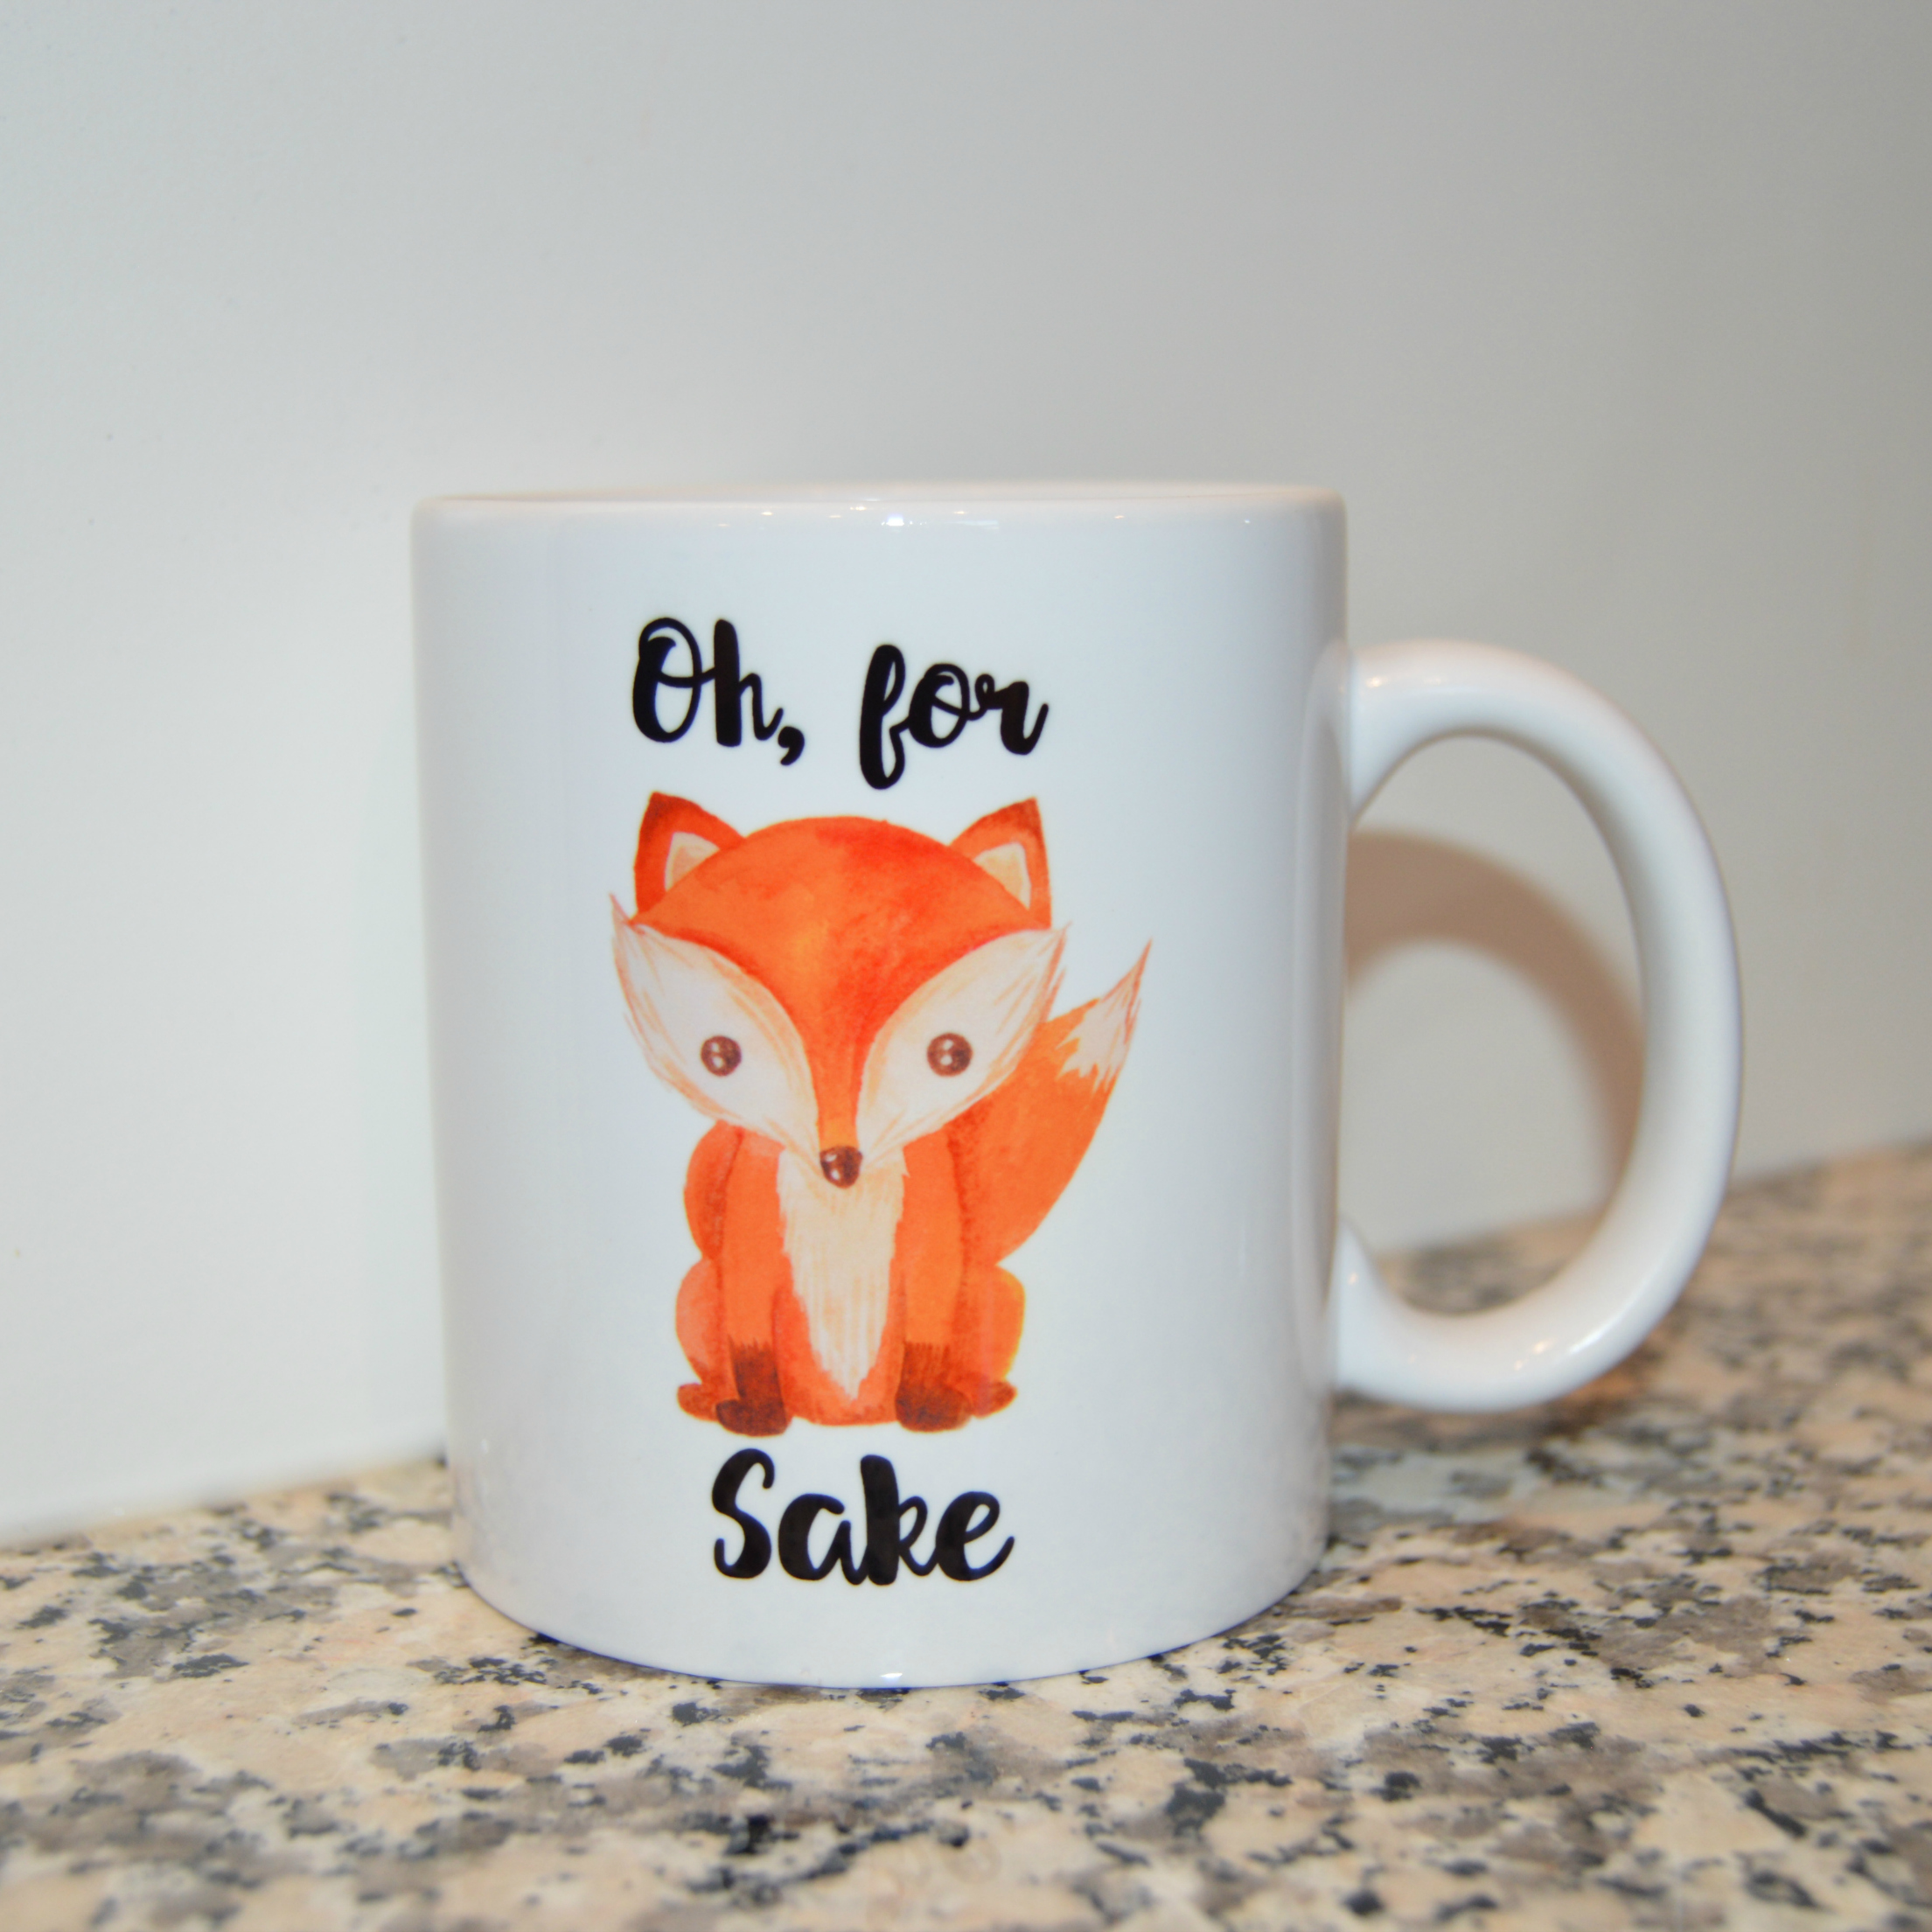 Fox Mug made with sublimation printing